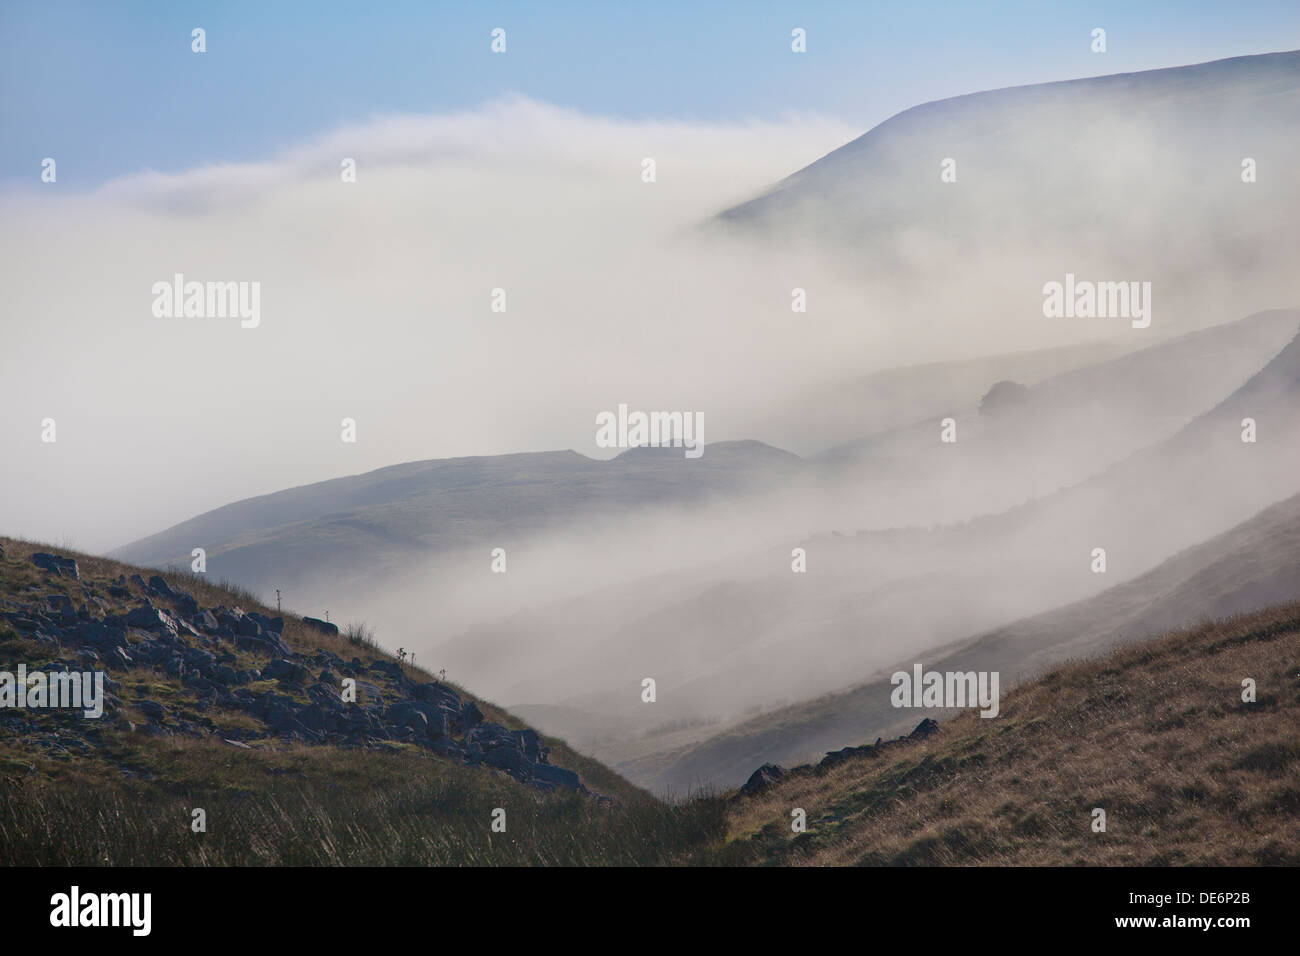 Visualizza in basso la nebbia riempito nella valle verso Swaledale da Buttertubs pass, Swaledale, Yorkshire Dales, North Yorkshire, Regno Unito Foto Stock